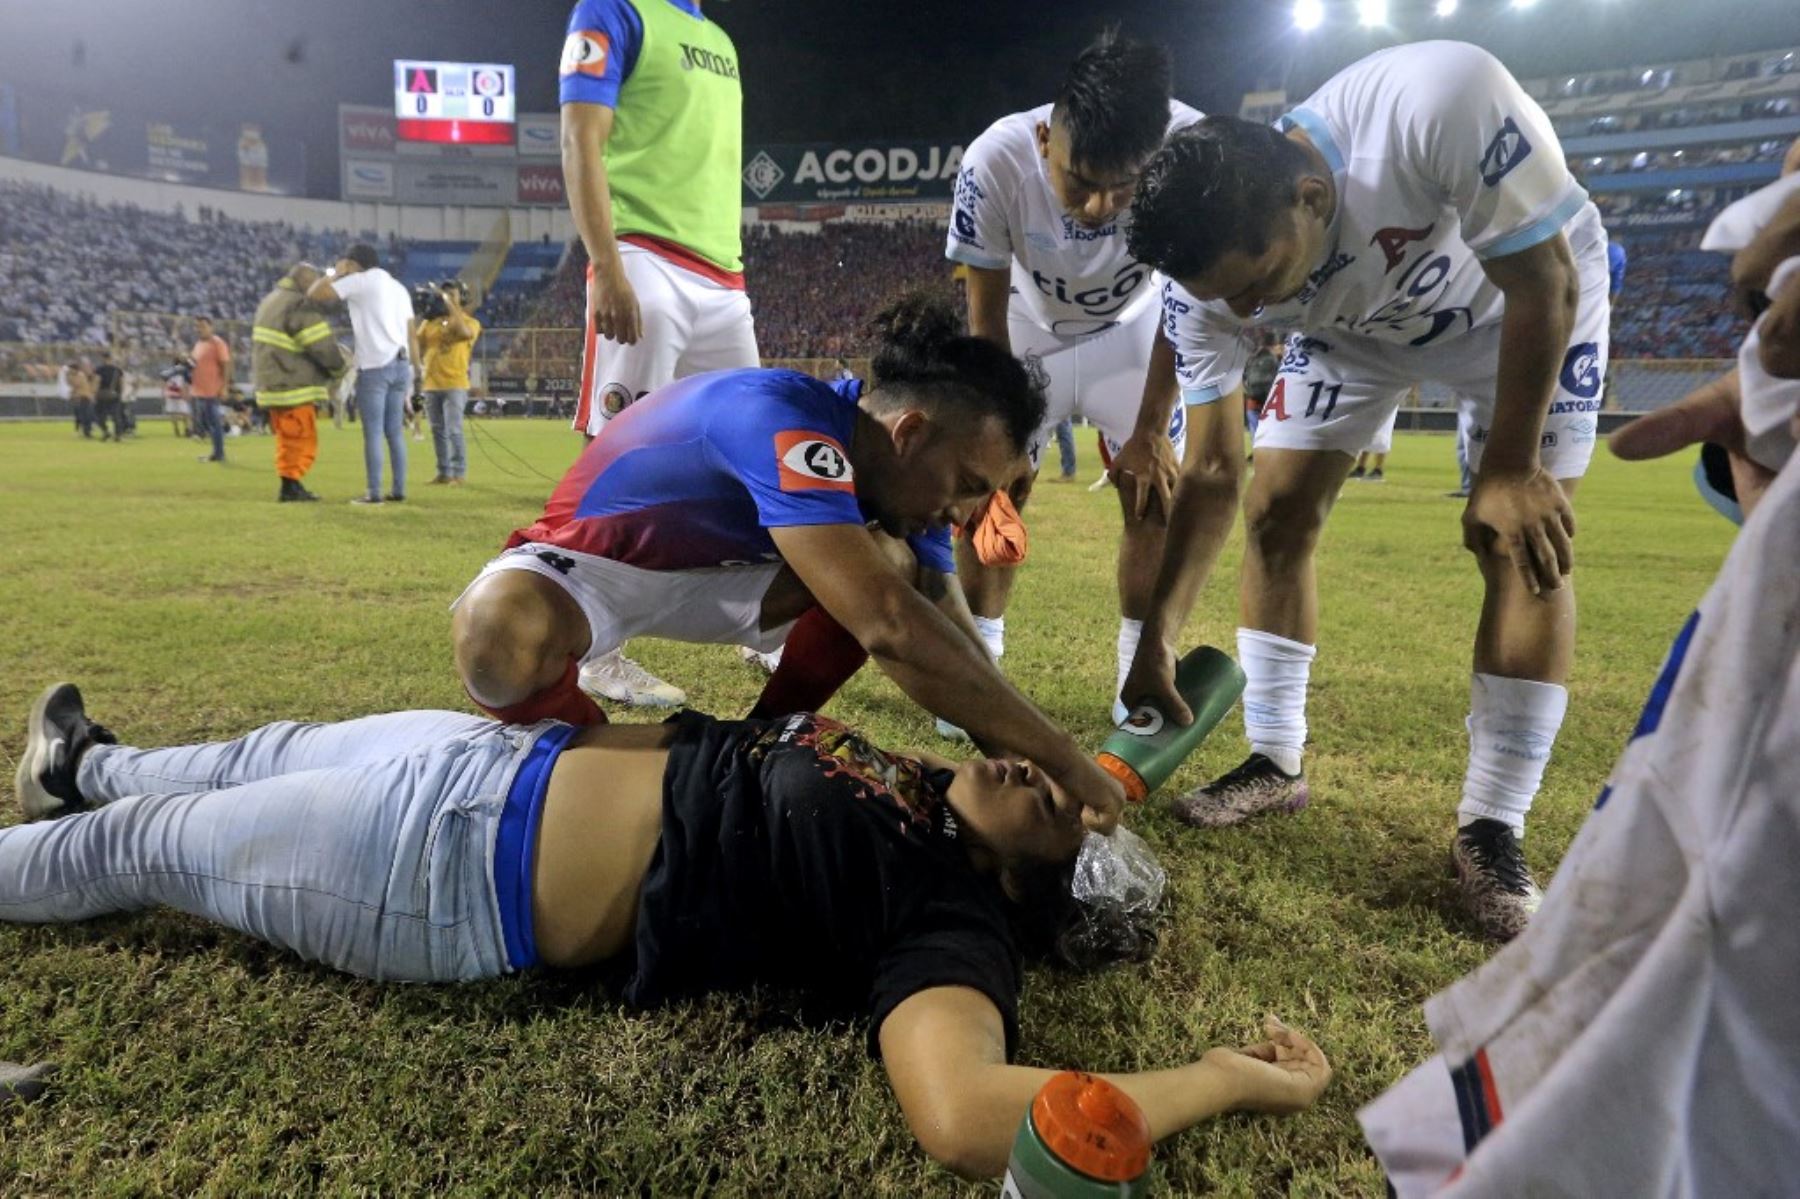 La tragedia se apoderó en un estadio de fútbol en San Salvador, donde se registró 12 muertos tras una estampida de aficonados